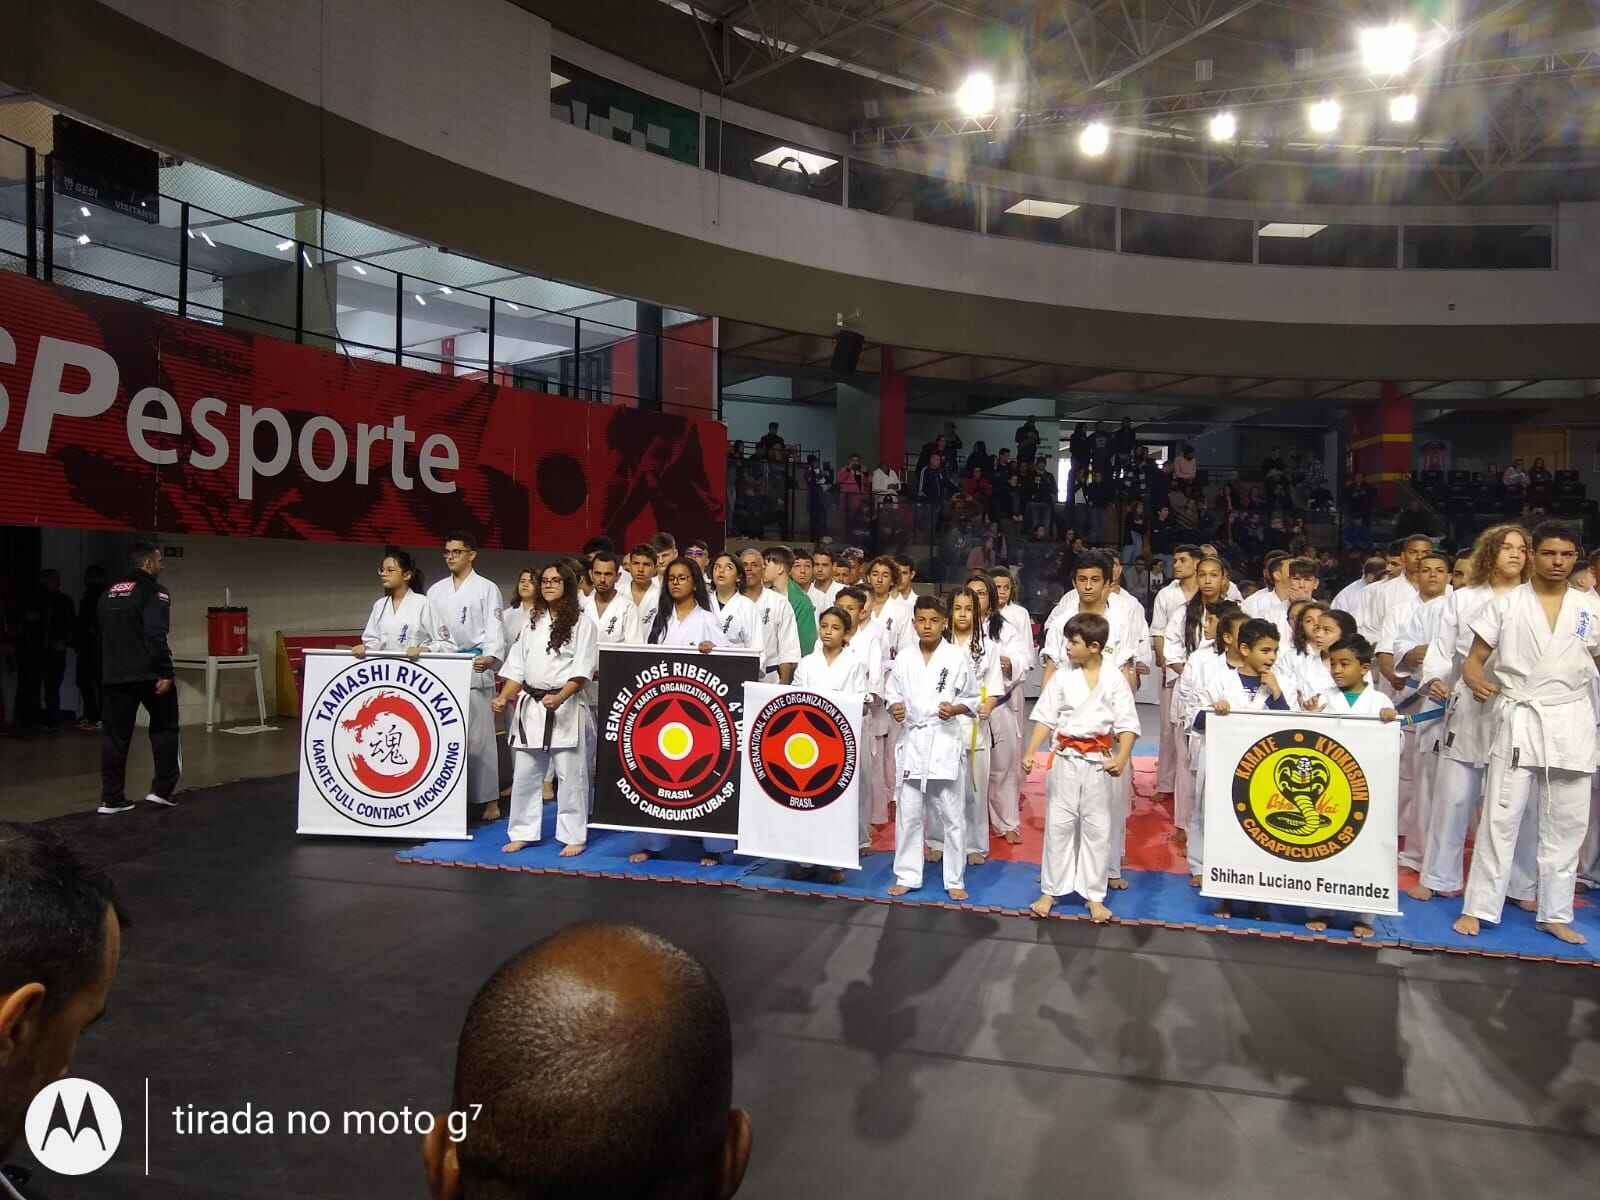 Caraguatatuba conquista sete medalhas no Grand Prix de Karatê Kyokushin em São Paulo